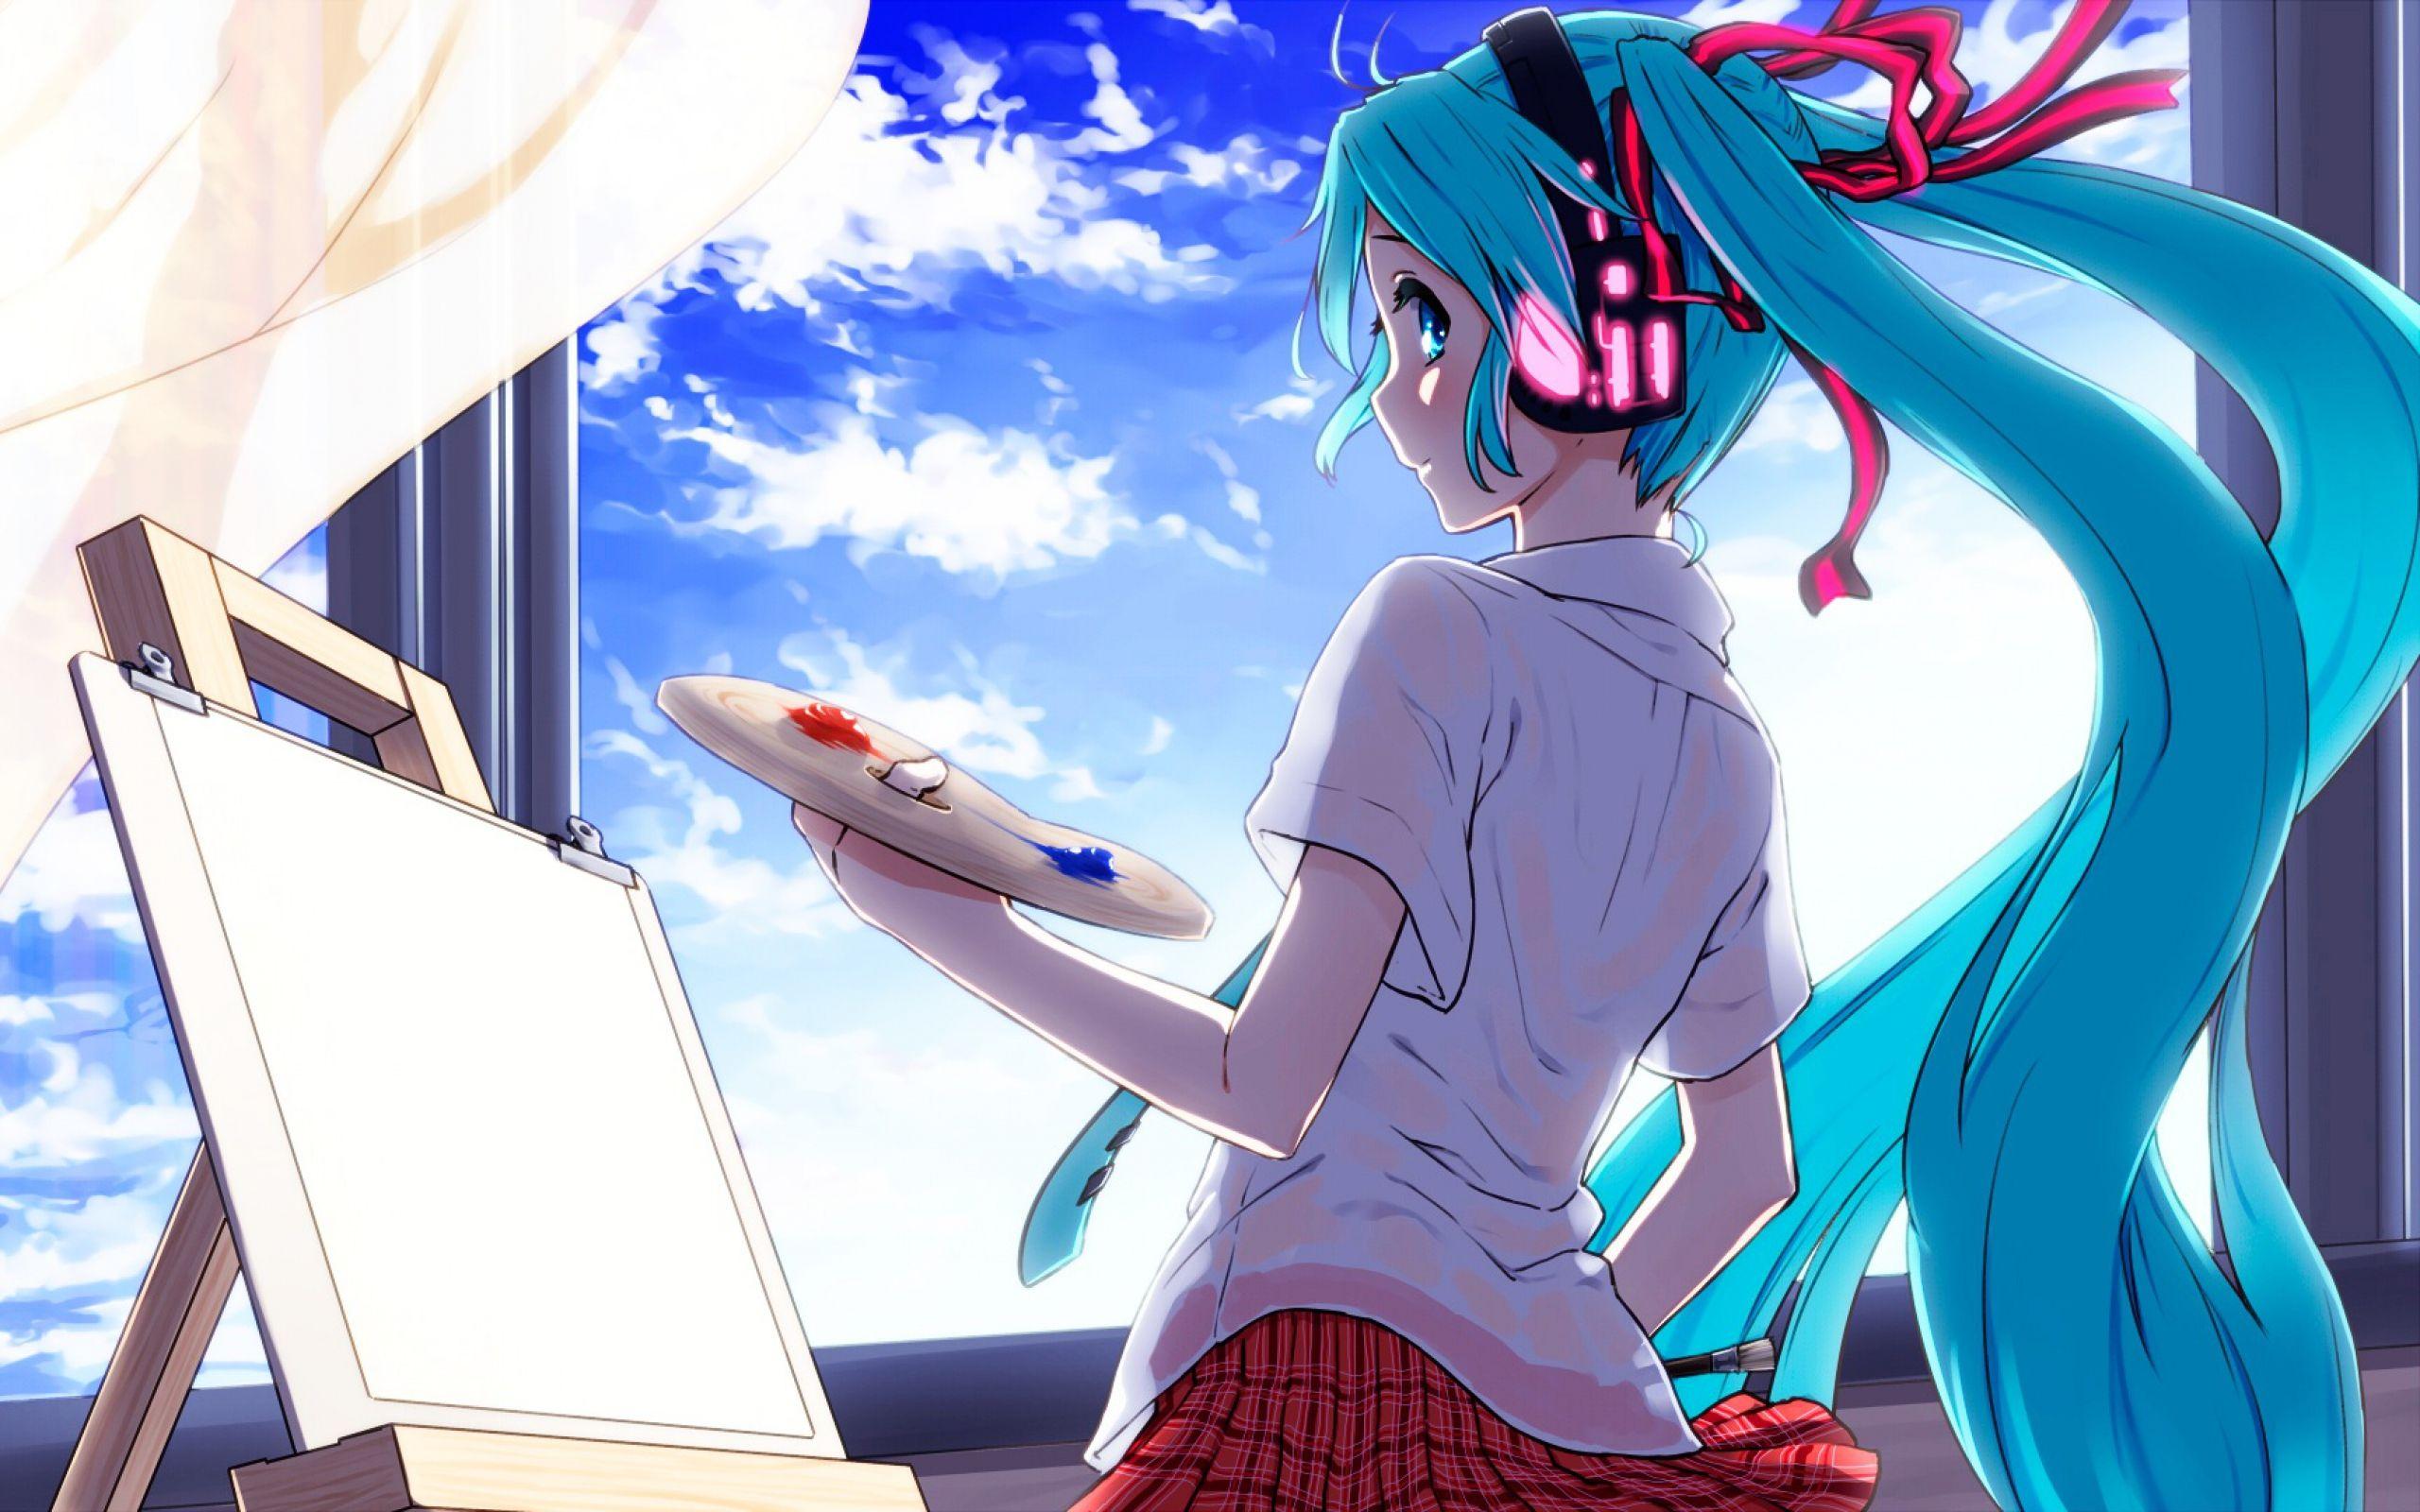 Hình nền  hình minh họa Anime Cá hoạt hình Vocaloid Hatsune Miku  dưới nước Ảnh chụp màn hình Hình nền máy tính Mangaka 2039x1147   nightelf87  45668  Hình nền đẹp hd  WallHere